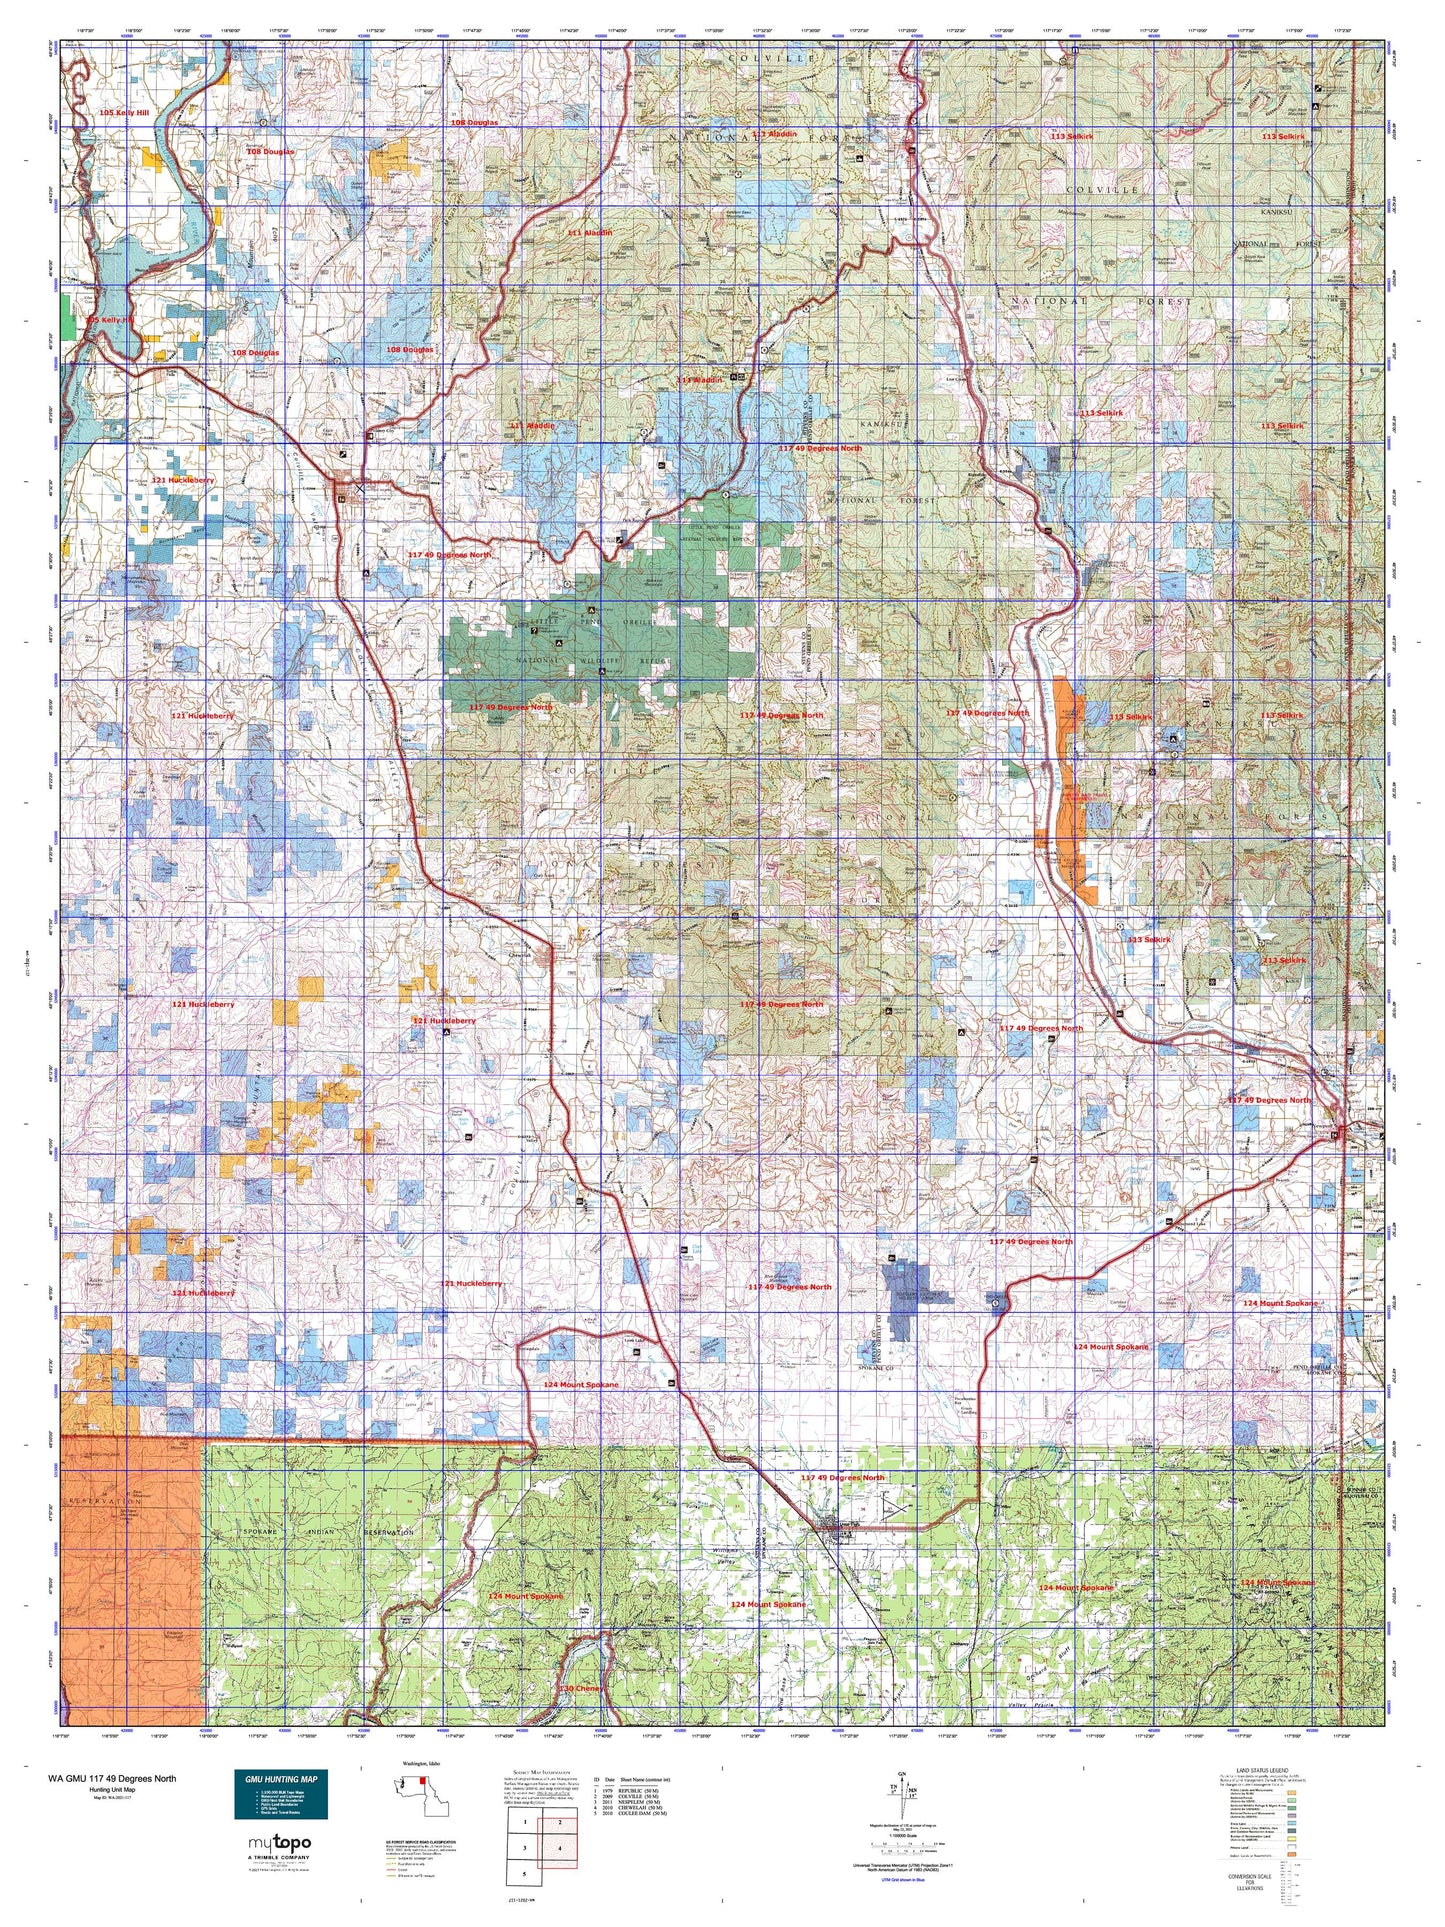 Washington GMU 117 49 Degrees North Map Image